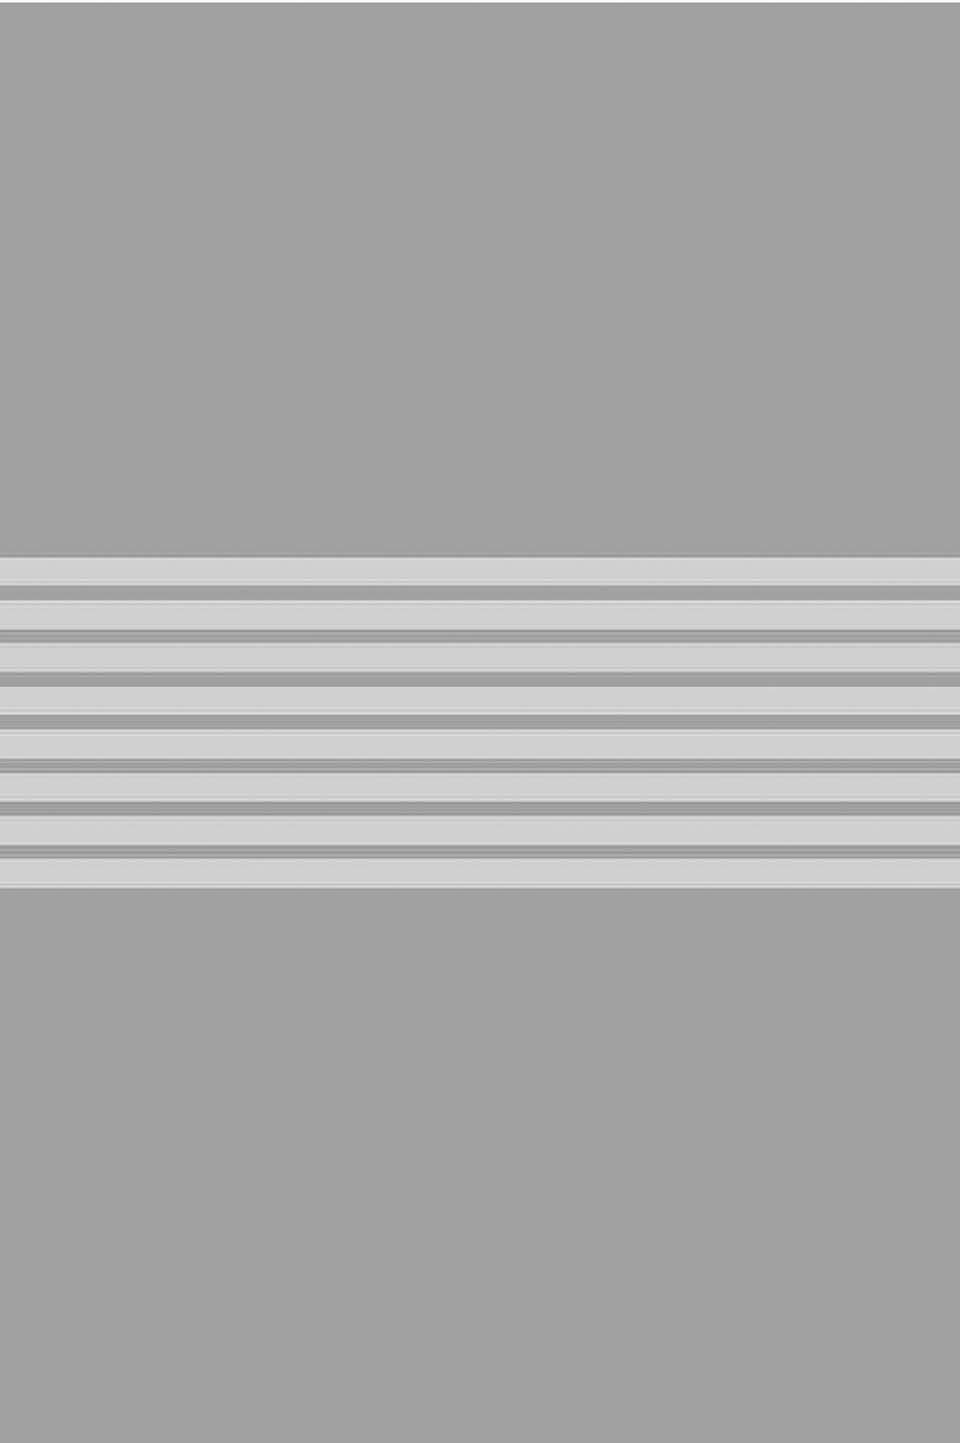 Sandstrahlmotiv 7 mit Streifen symmetrisch